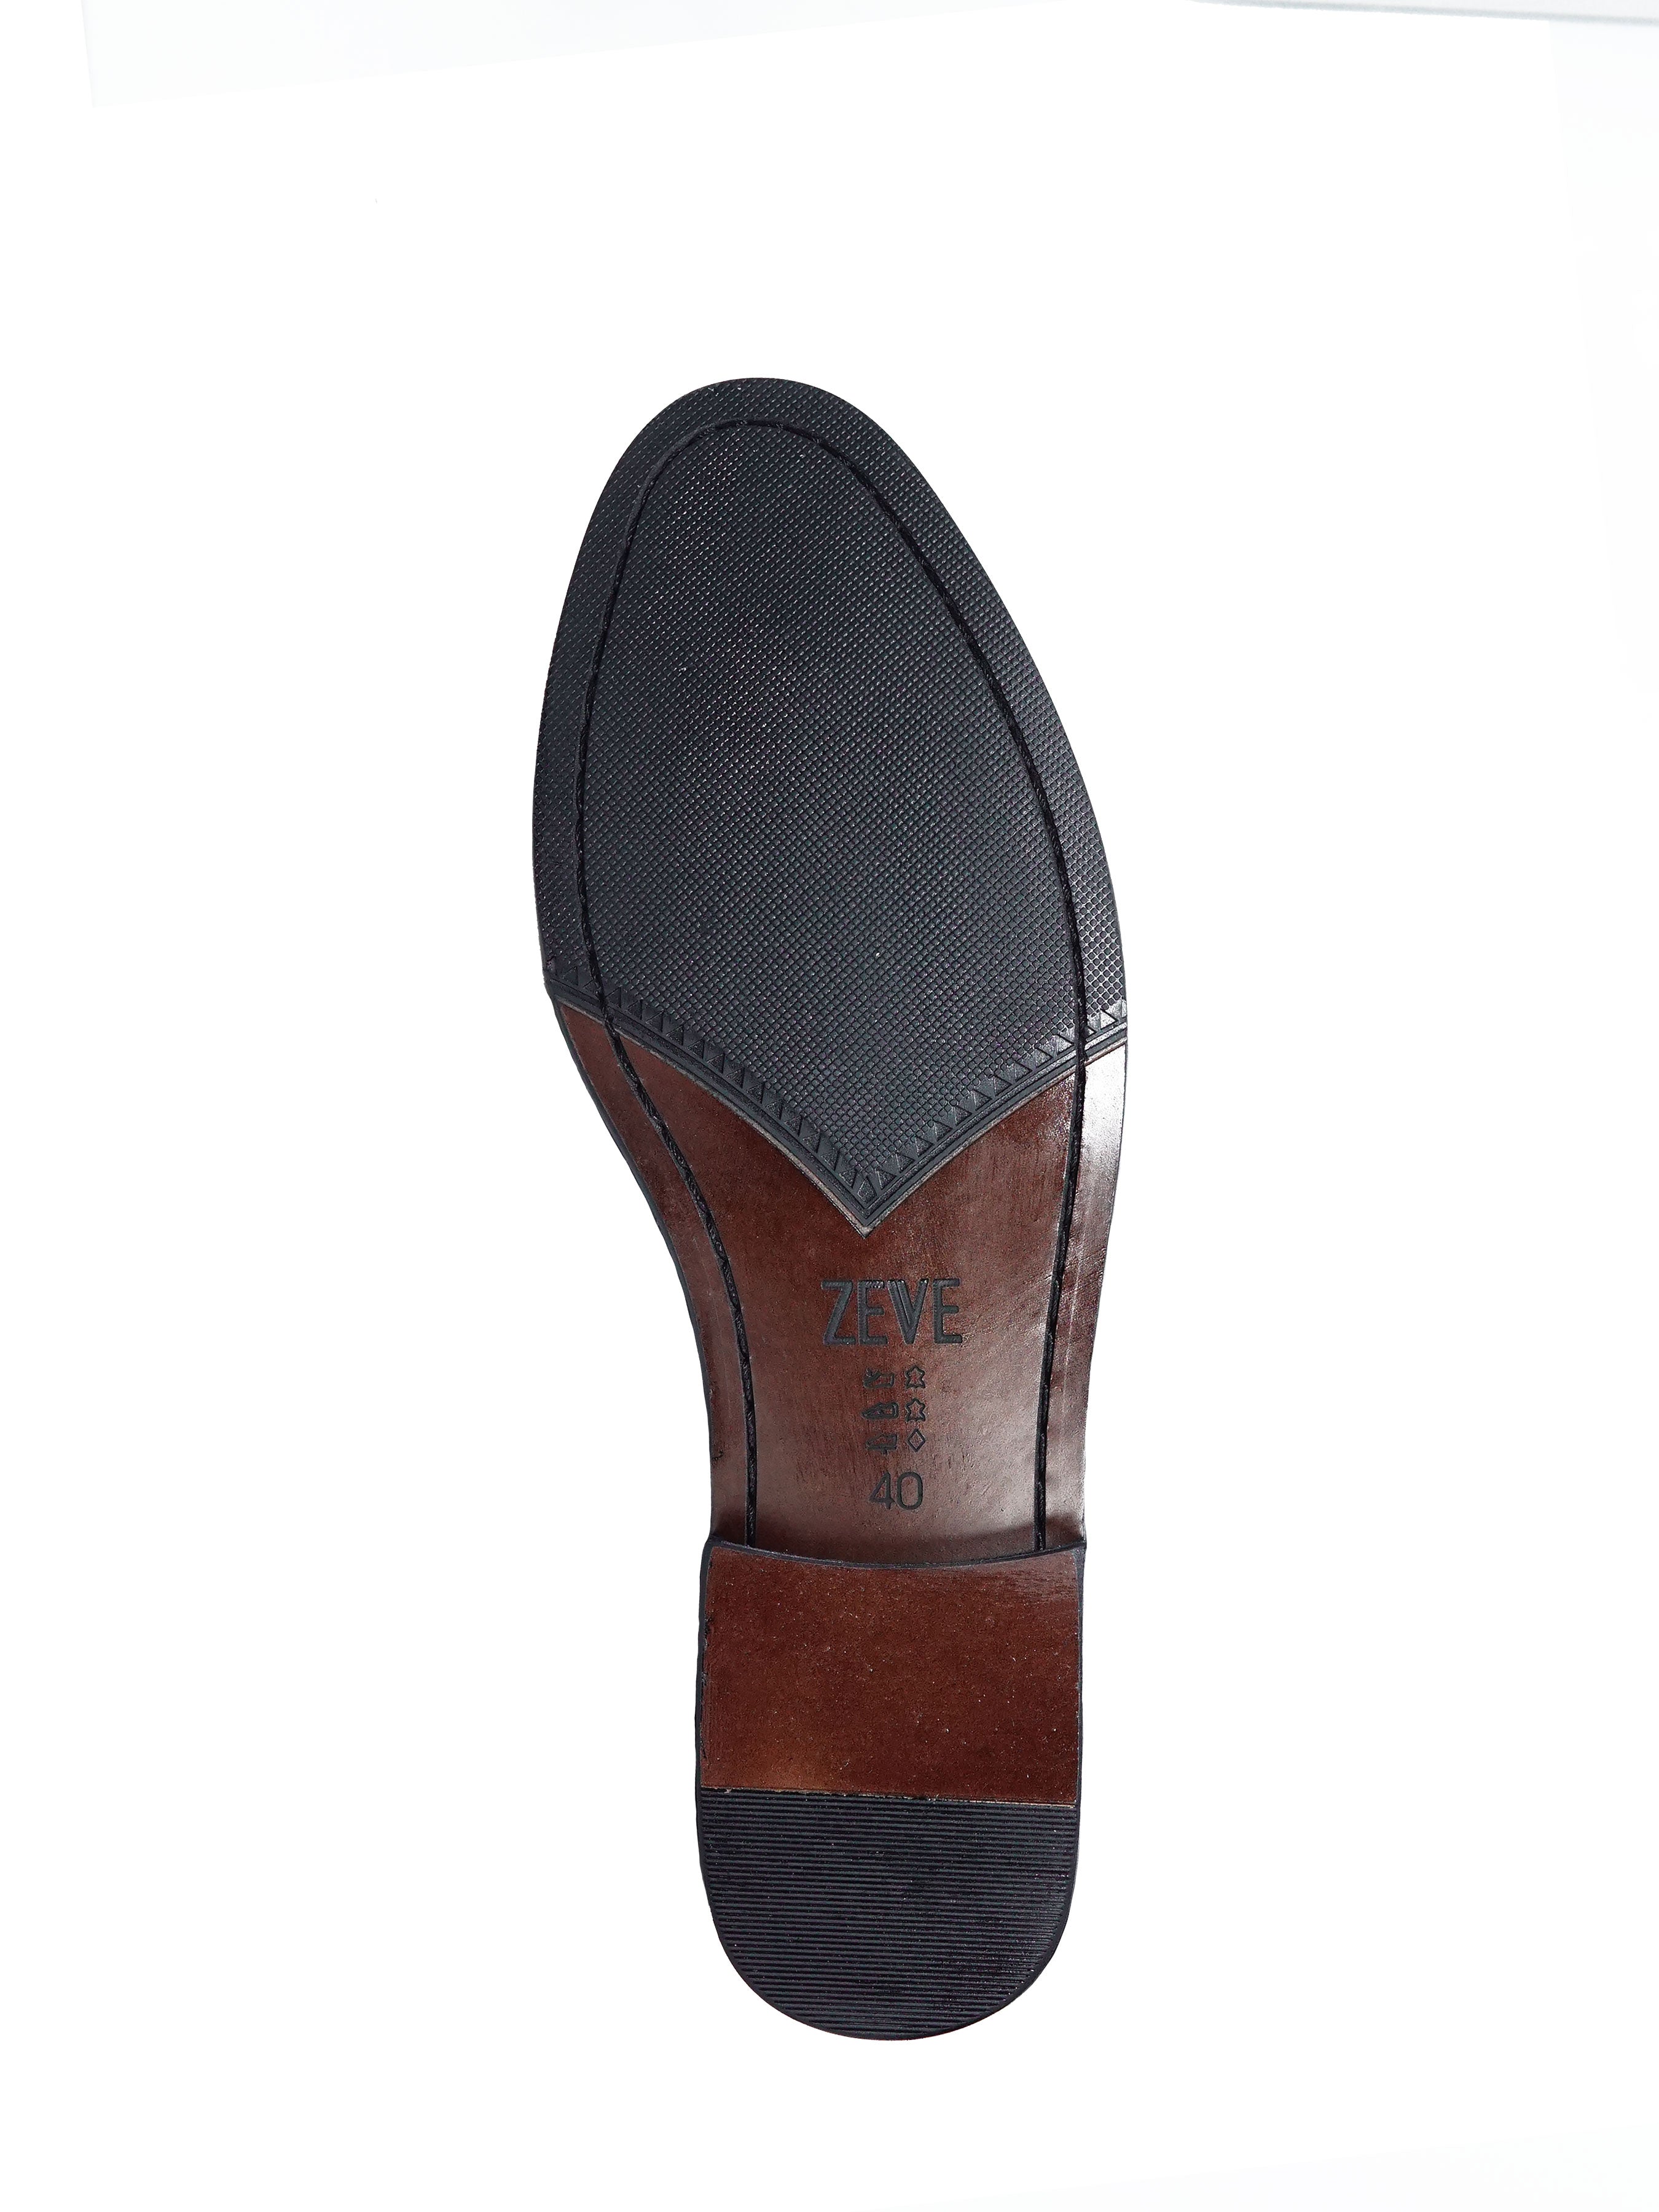 Mules - Black Pebble Grain Leather Horsebit Buckle - Zeve Shoes